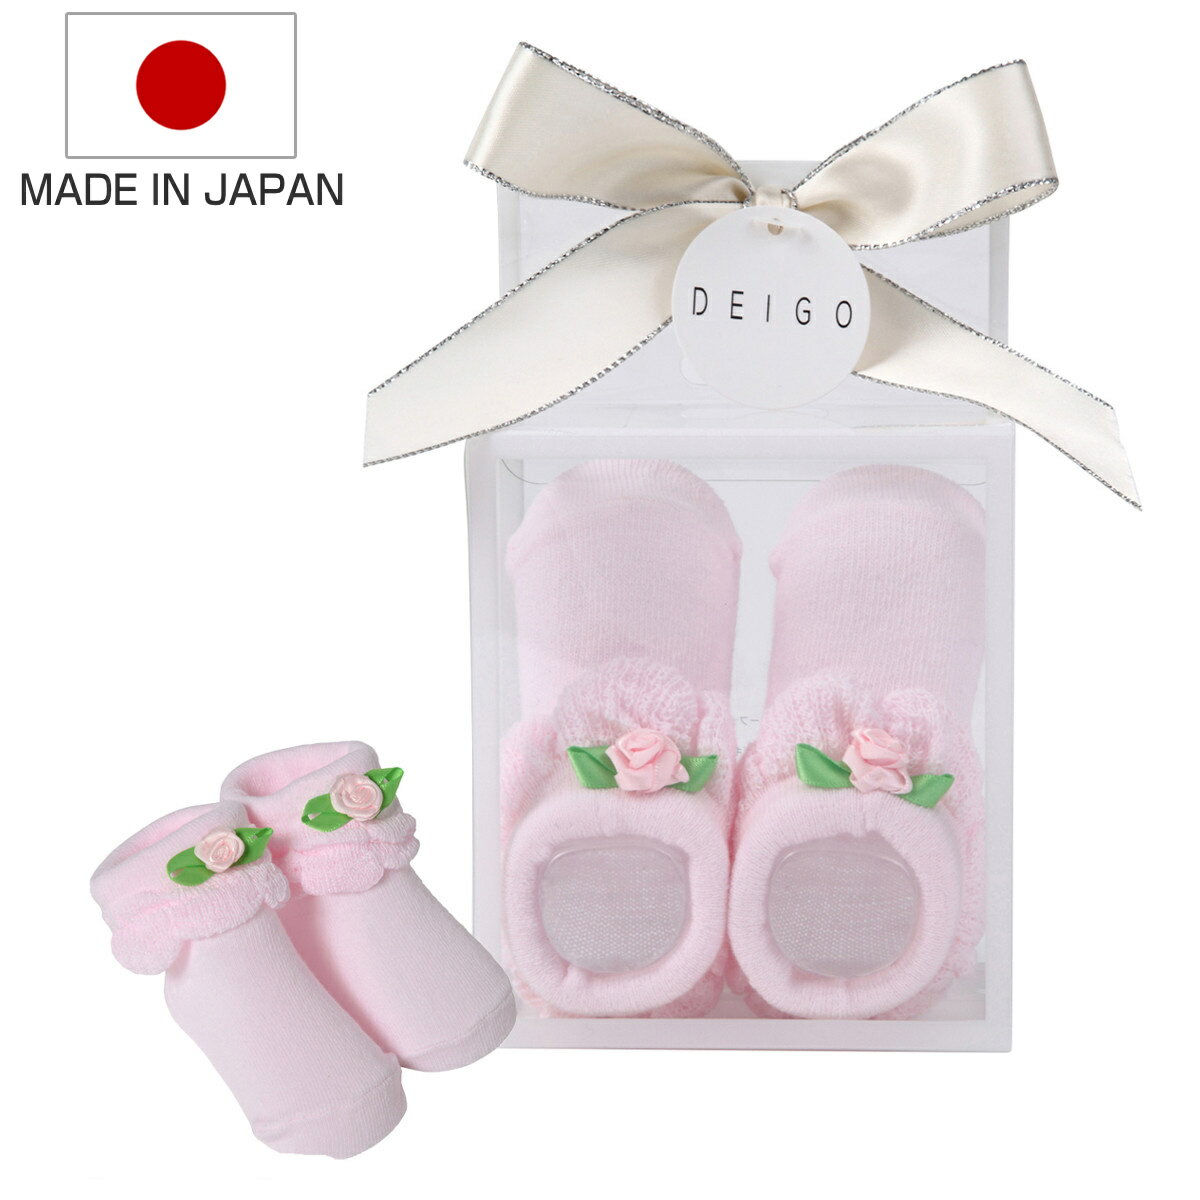 靴下 ベビー プレゼントソックス 女の子 9cm 日本製 出産祝い （ ベビーソックス ソックス くつ下 薔薇 赤ちゃん 新生児 キッズ 子ども プレゼント くつした L字加工 脱げにくい BOX入り 化粧箱 ギフト お祝い かわいい ）